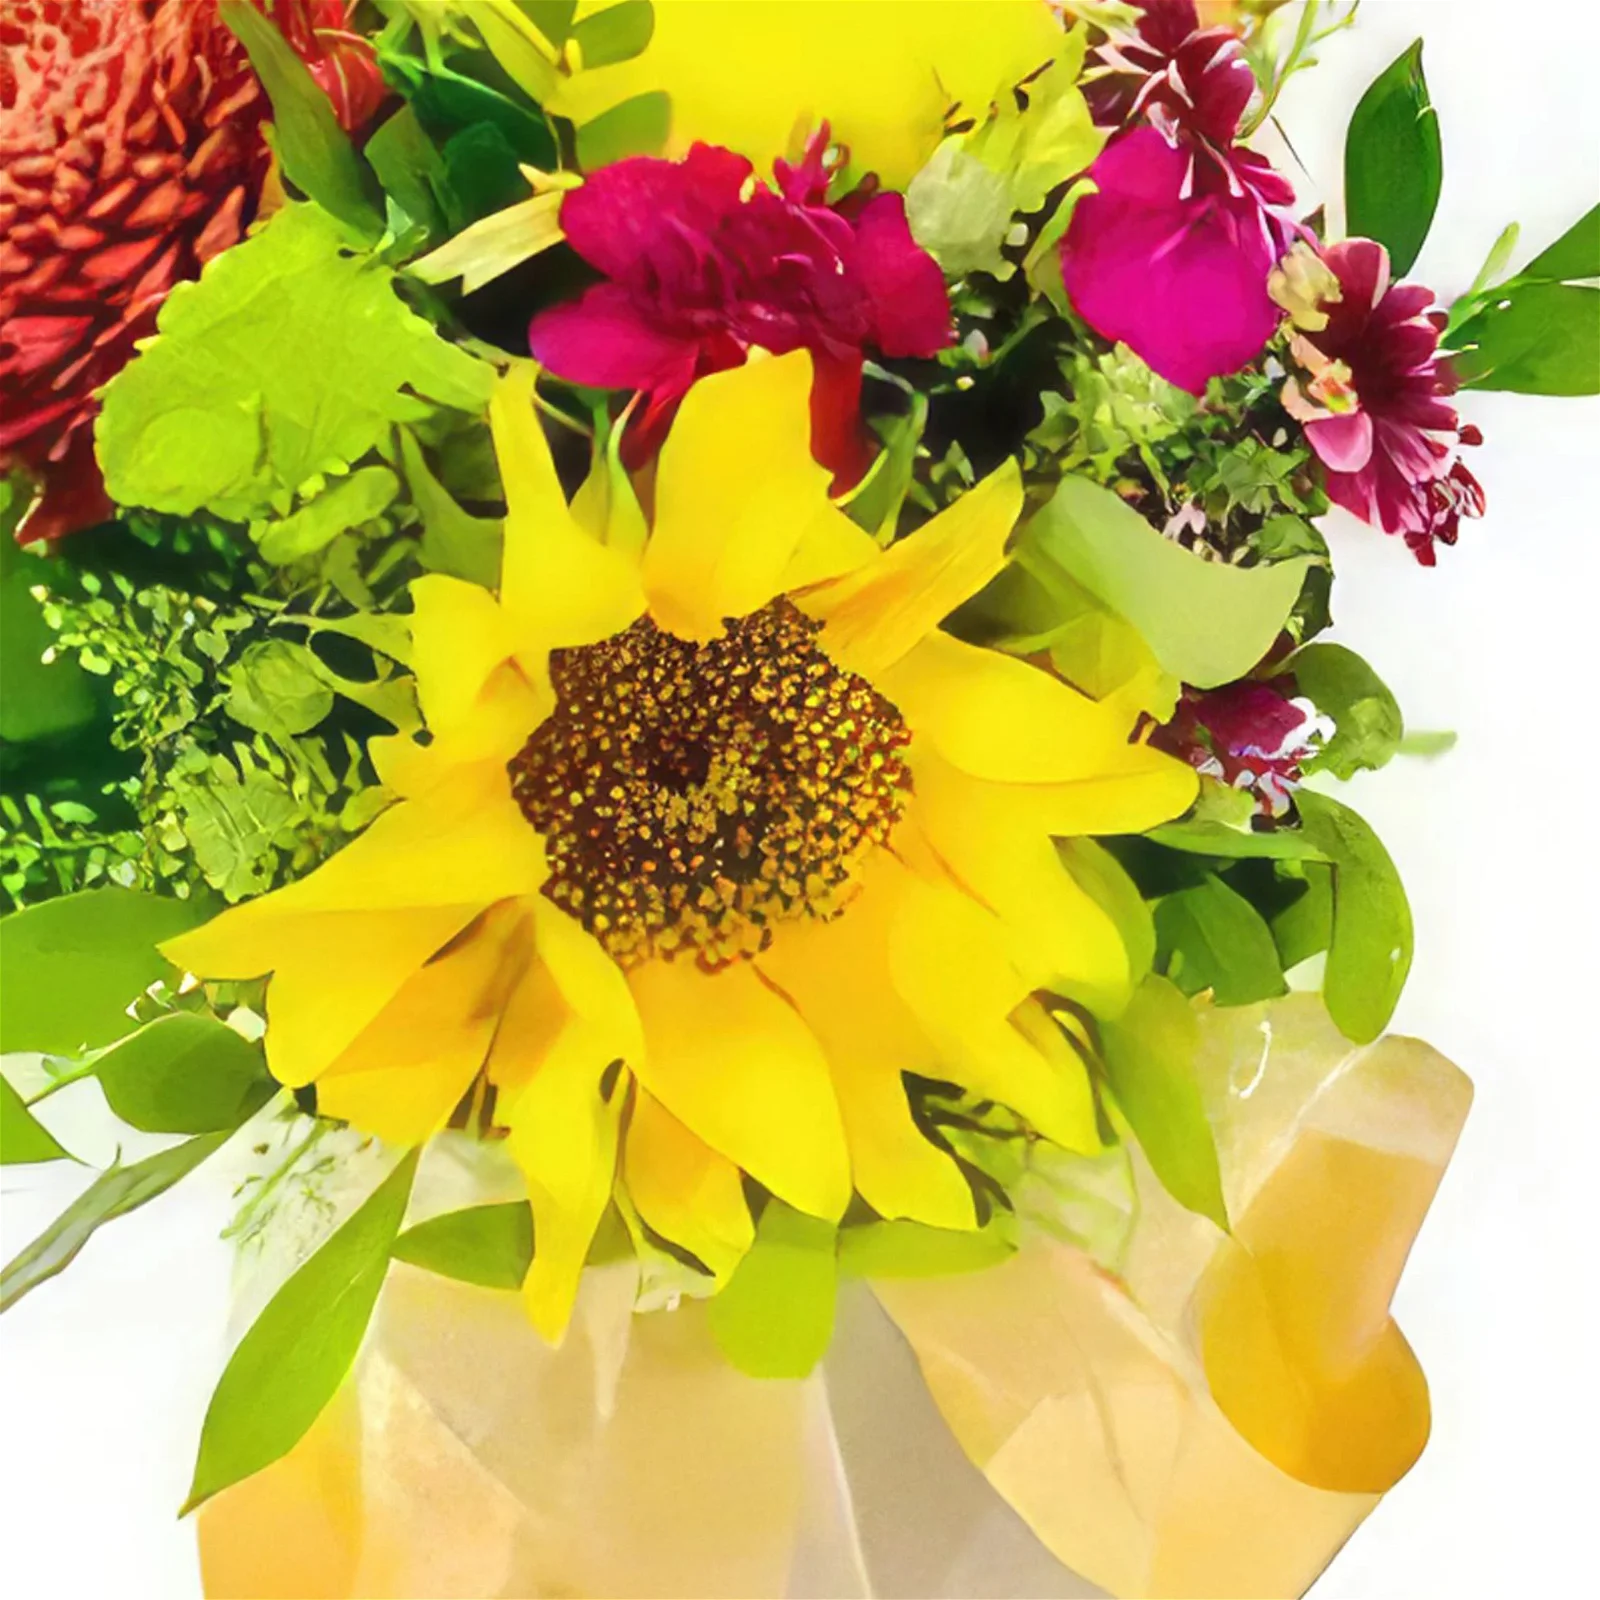 Fructuoso Rodriguez cvijeća- Proljetna ljubav Cvjetni buket/aranžman